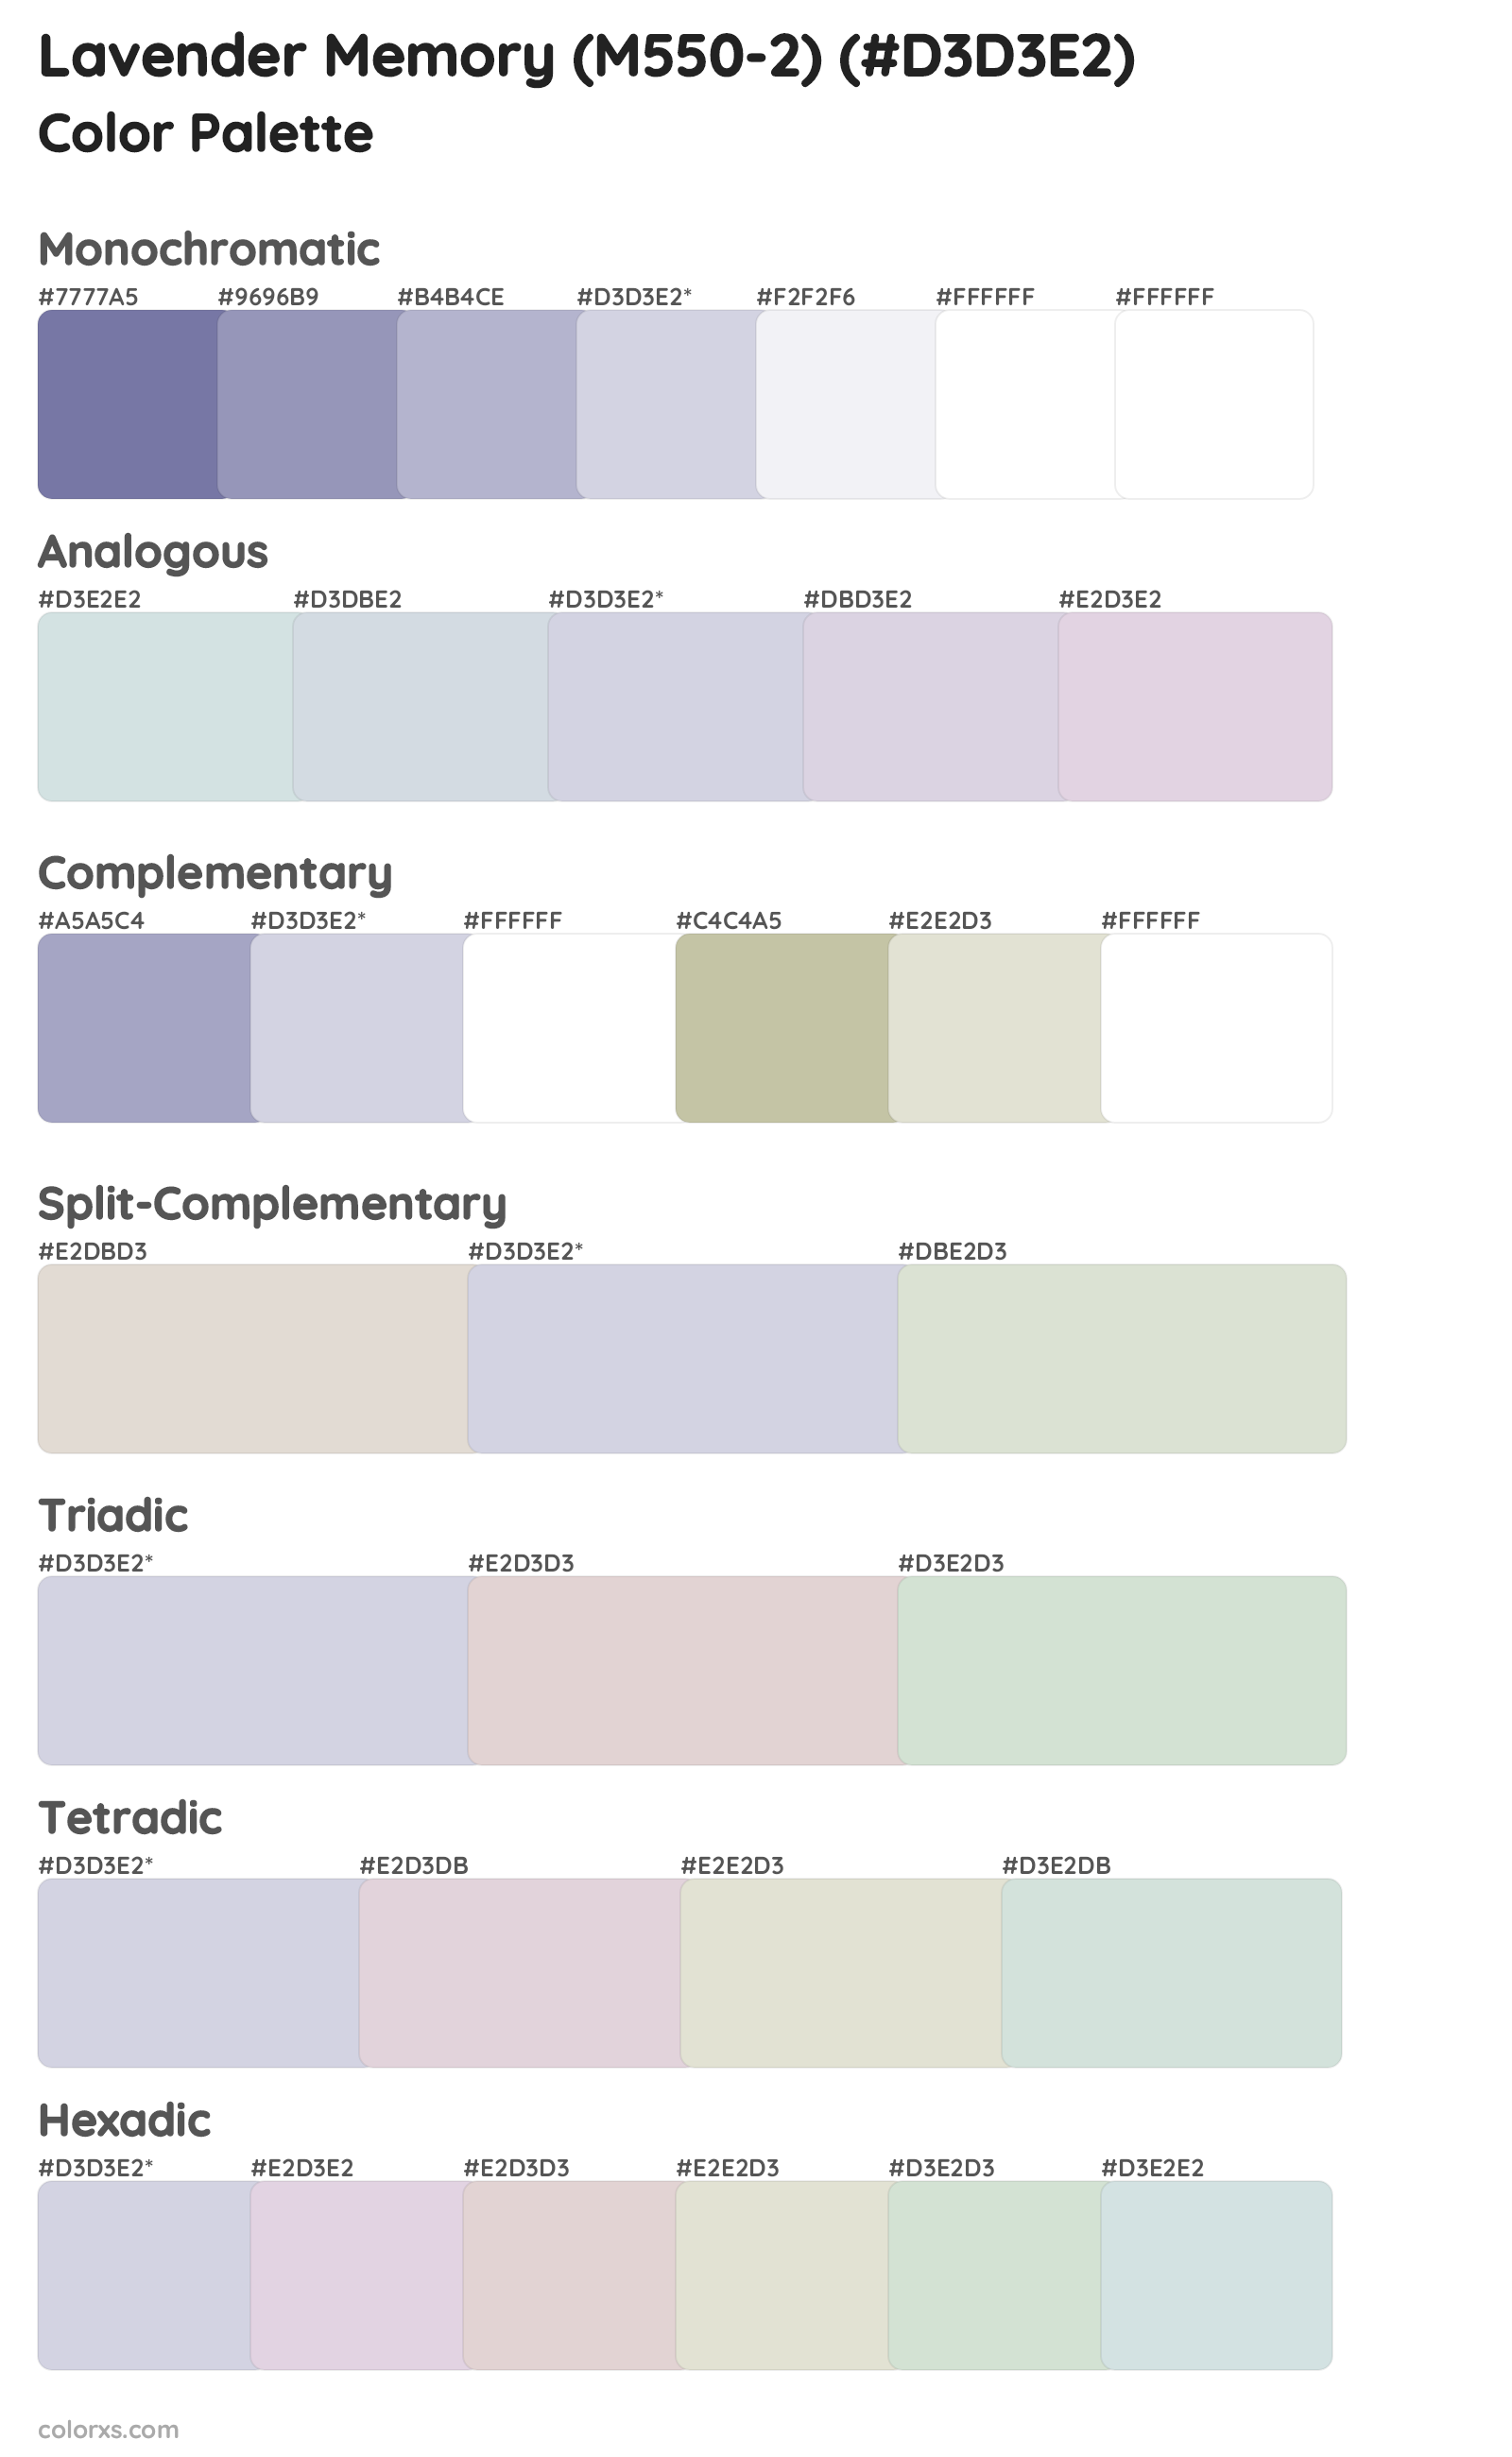 Lavender Memory (M550-2) Color Scheme Palettes